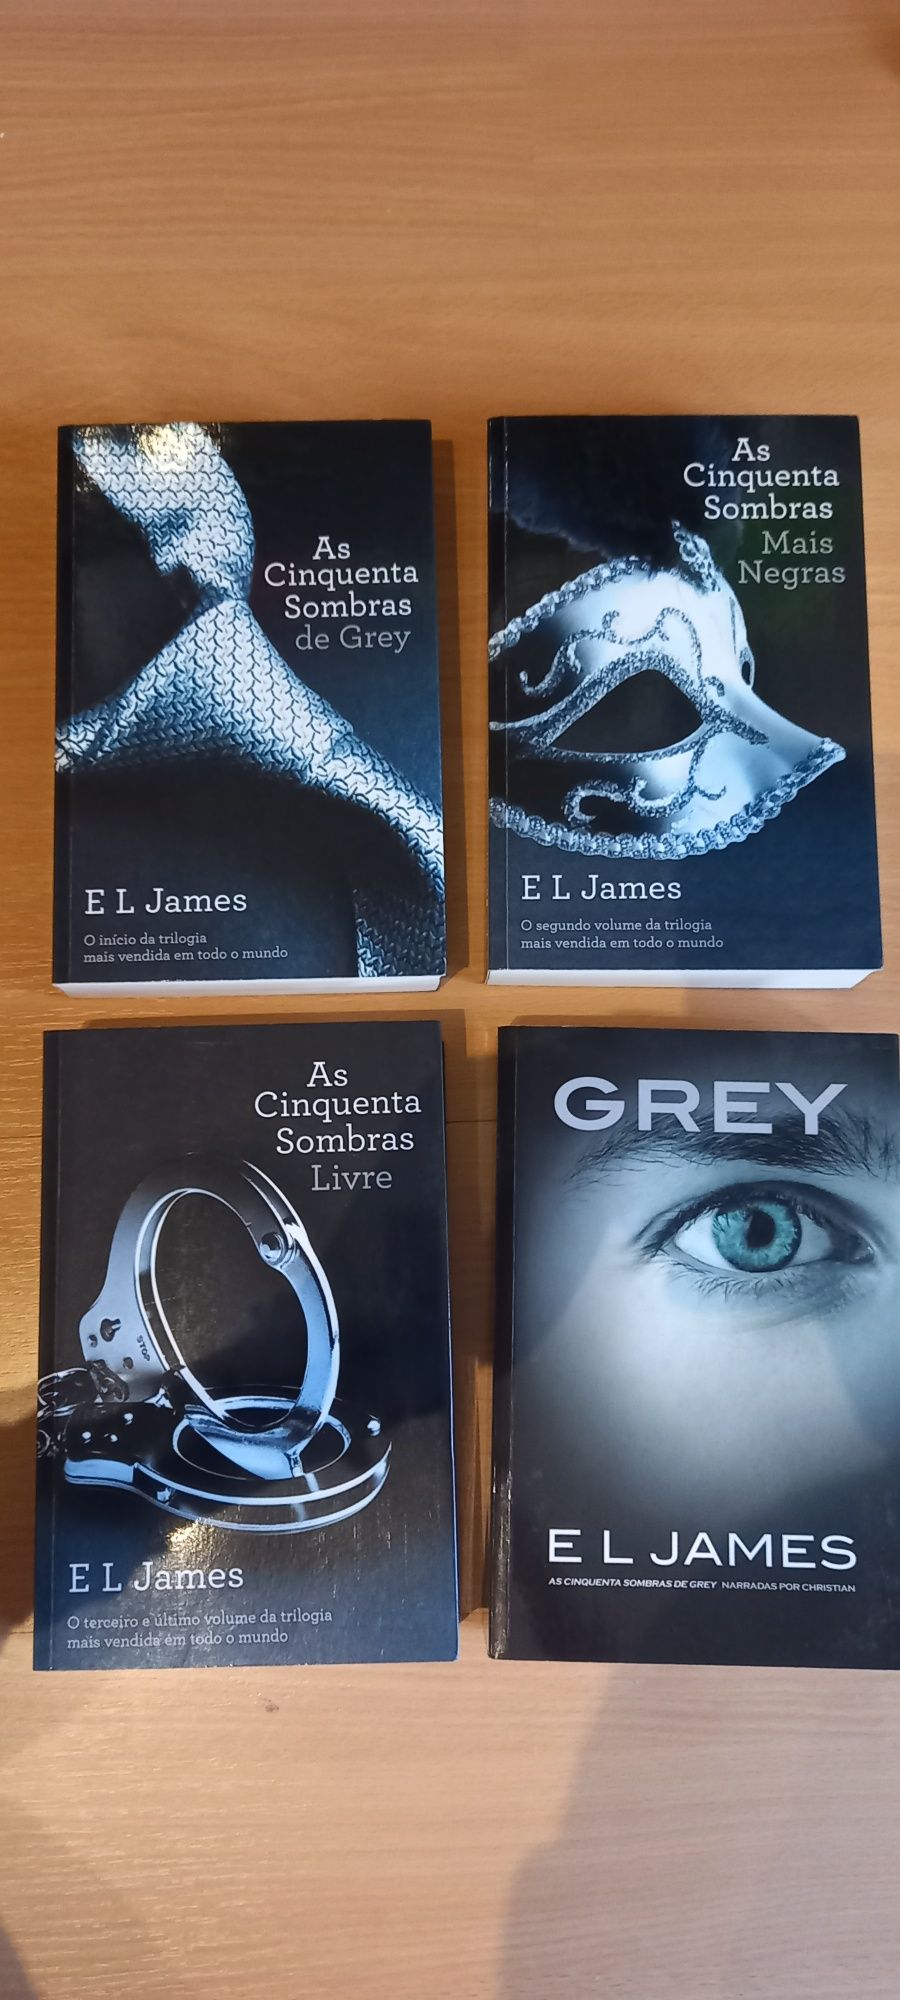 As Cinquenta Sombras de Grey - E L James (Por livro)